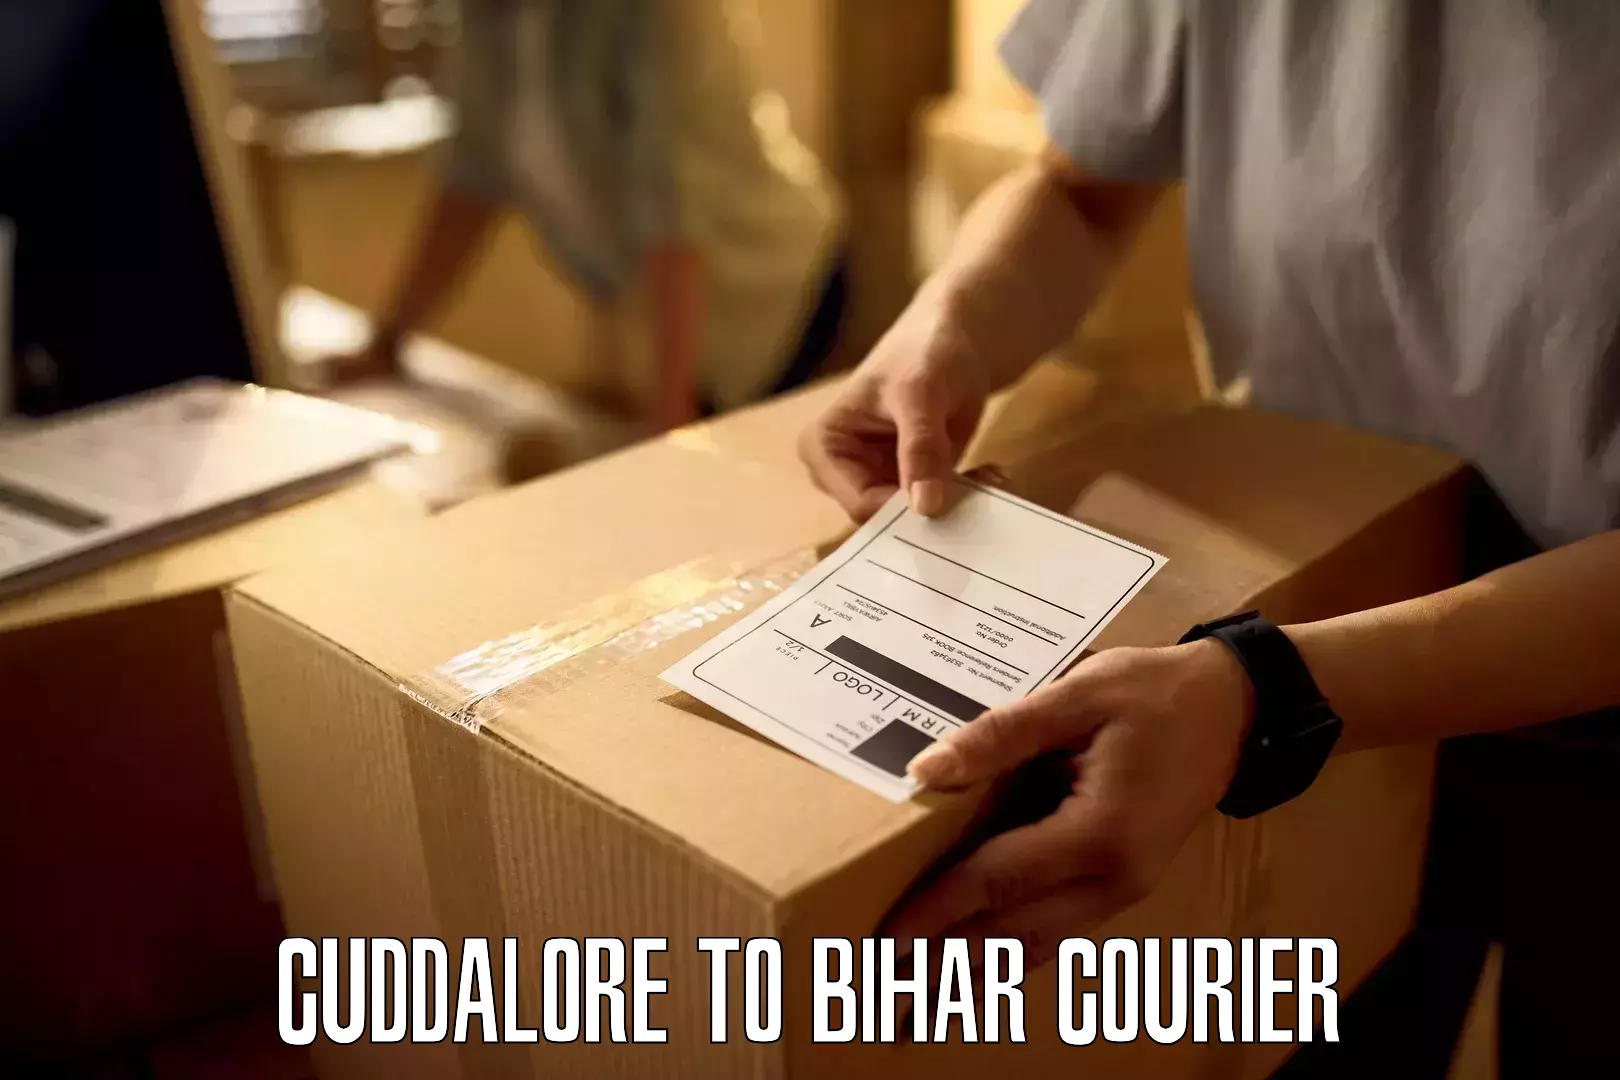 Customer-centric shipping Cuddalore to Bihar